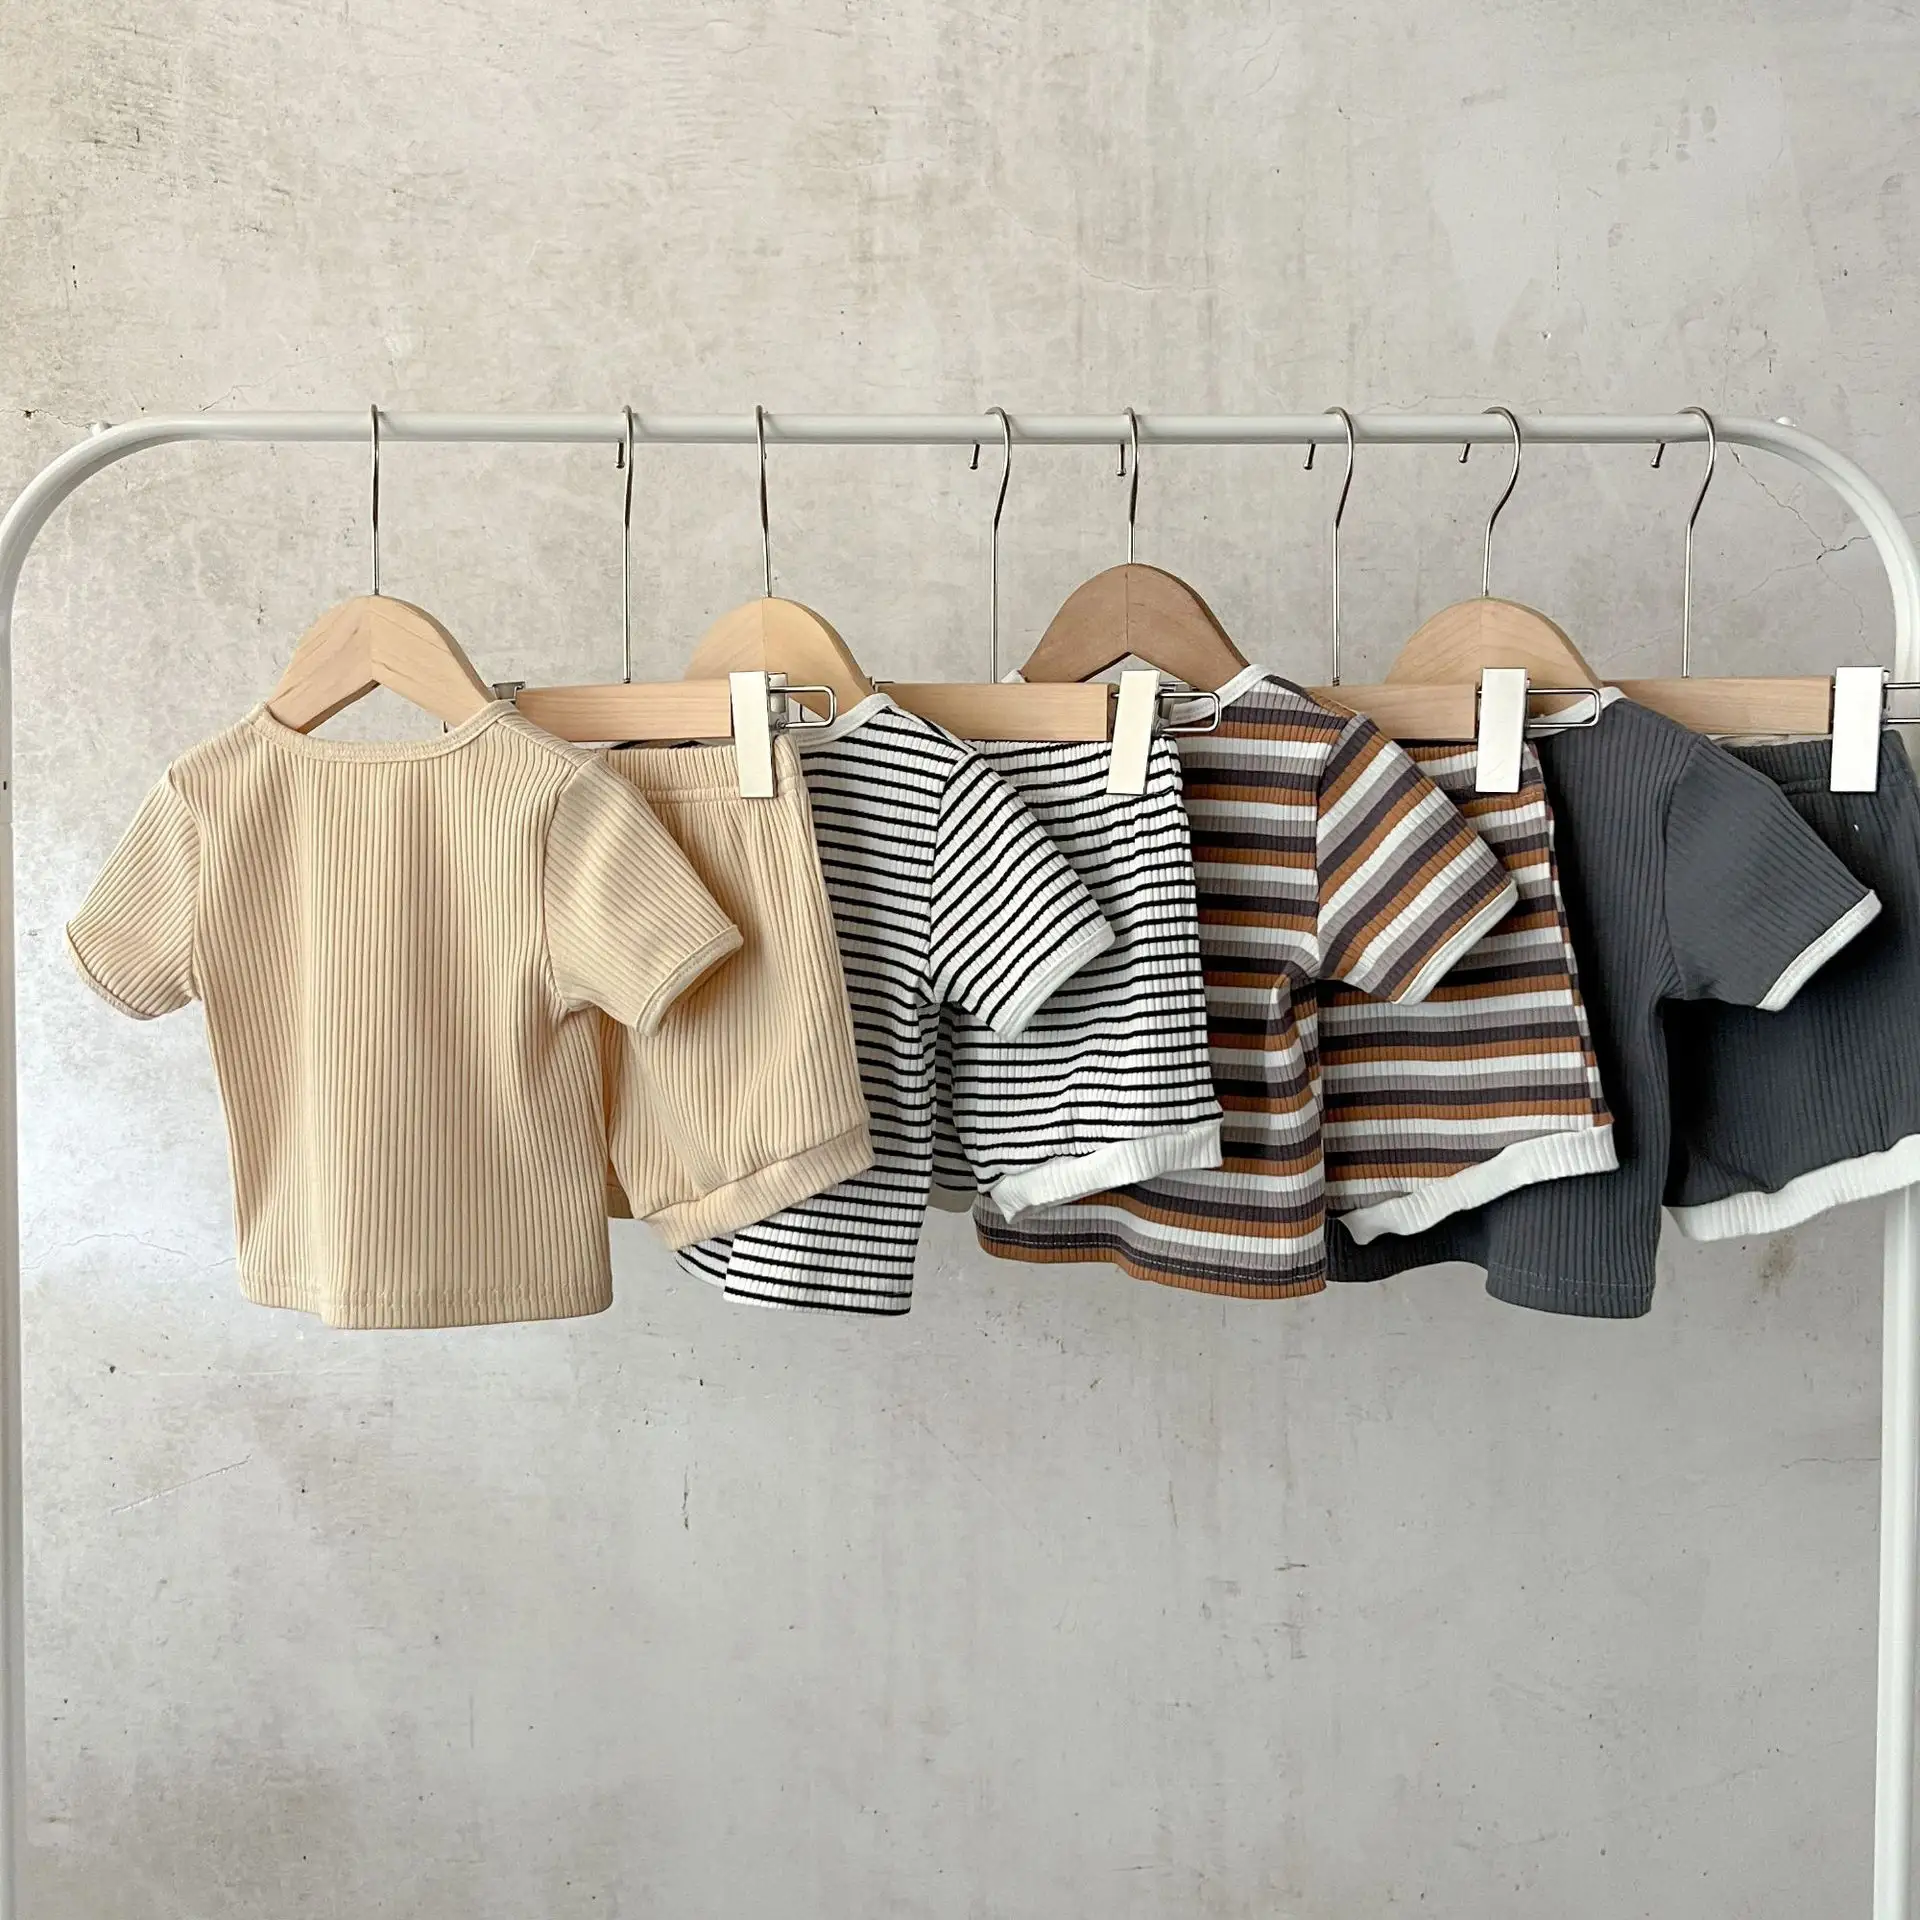 नवजात शिशु बच्चों के कपड़े के लिए लड़की और लड़का 2Pcs गर्मियों आकस्मिक यूनिसेक्स धारी लघु आस्तीन टी शर्ट + शॉर्ट्स बच्चा सूट